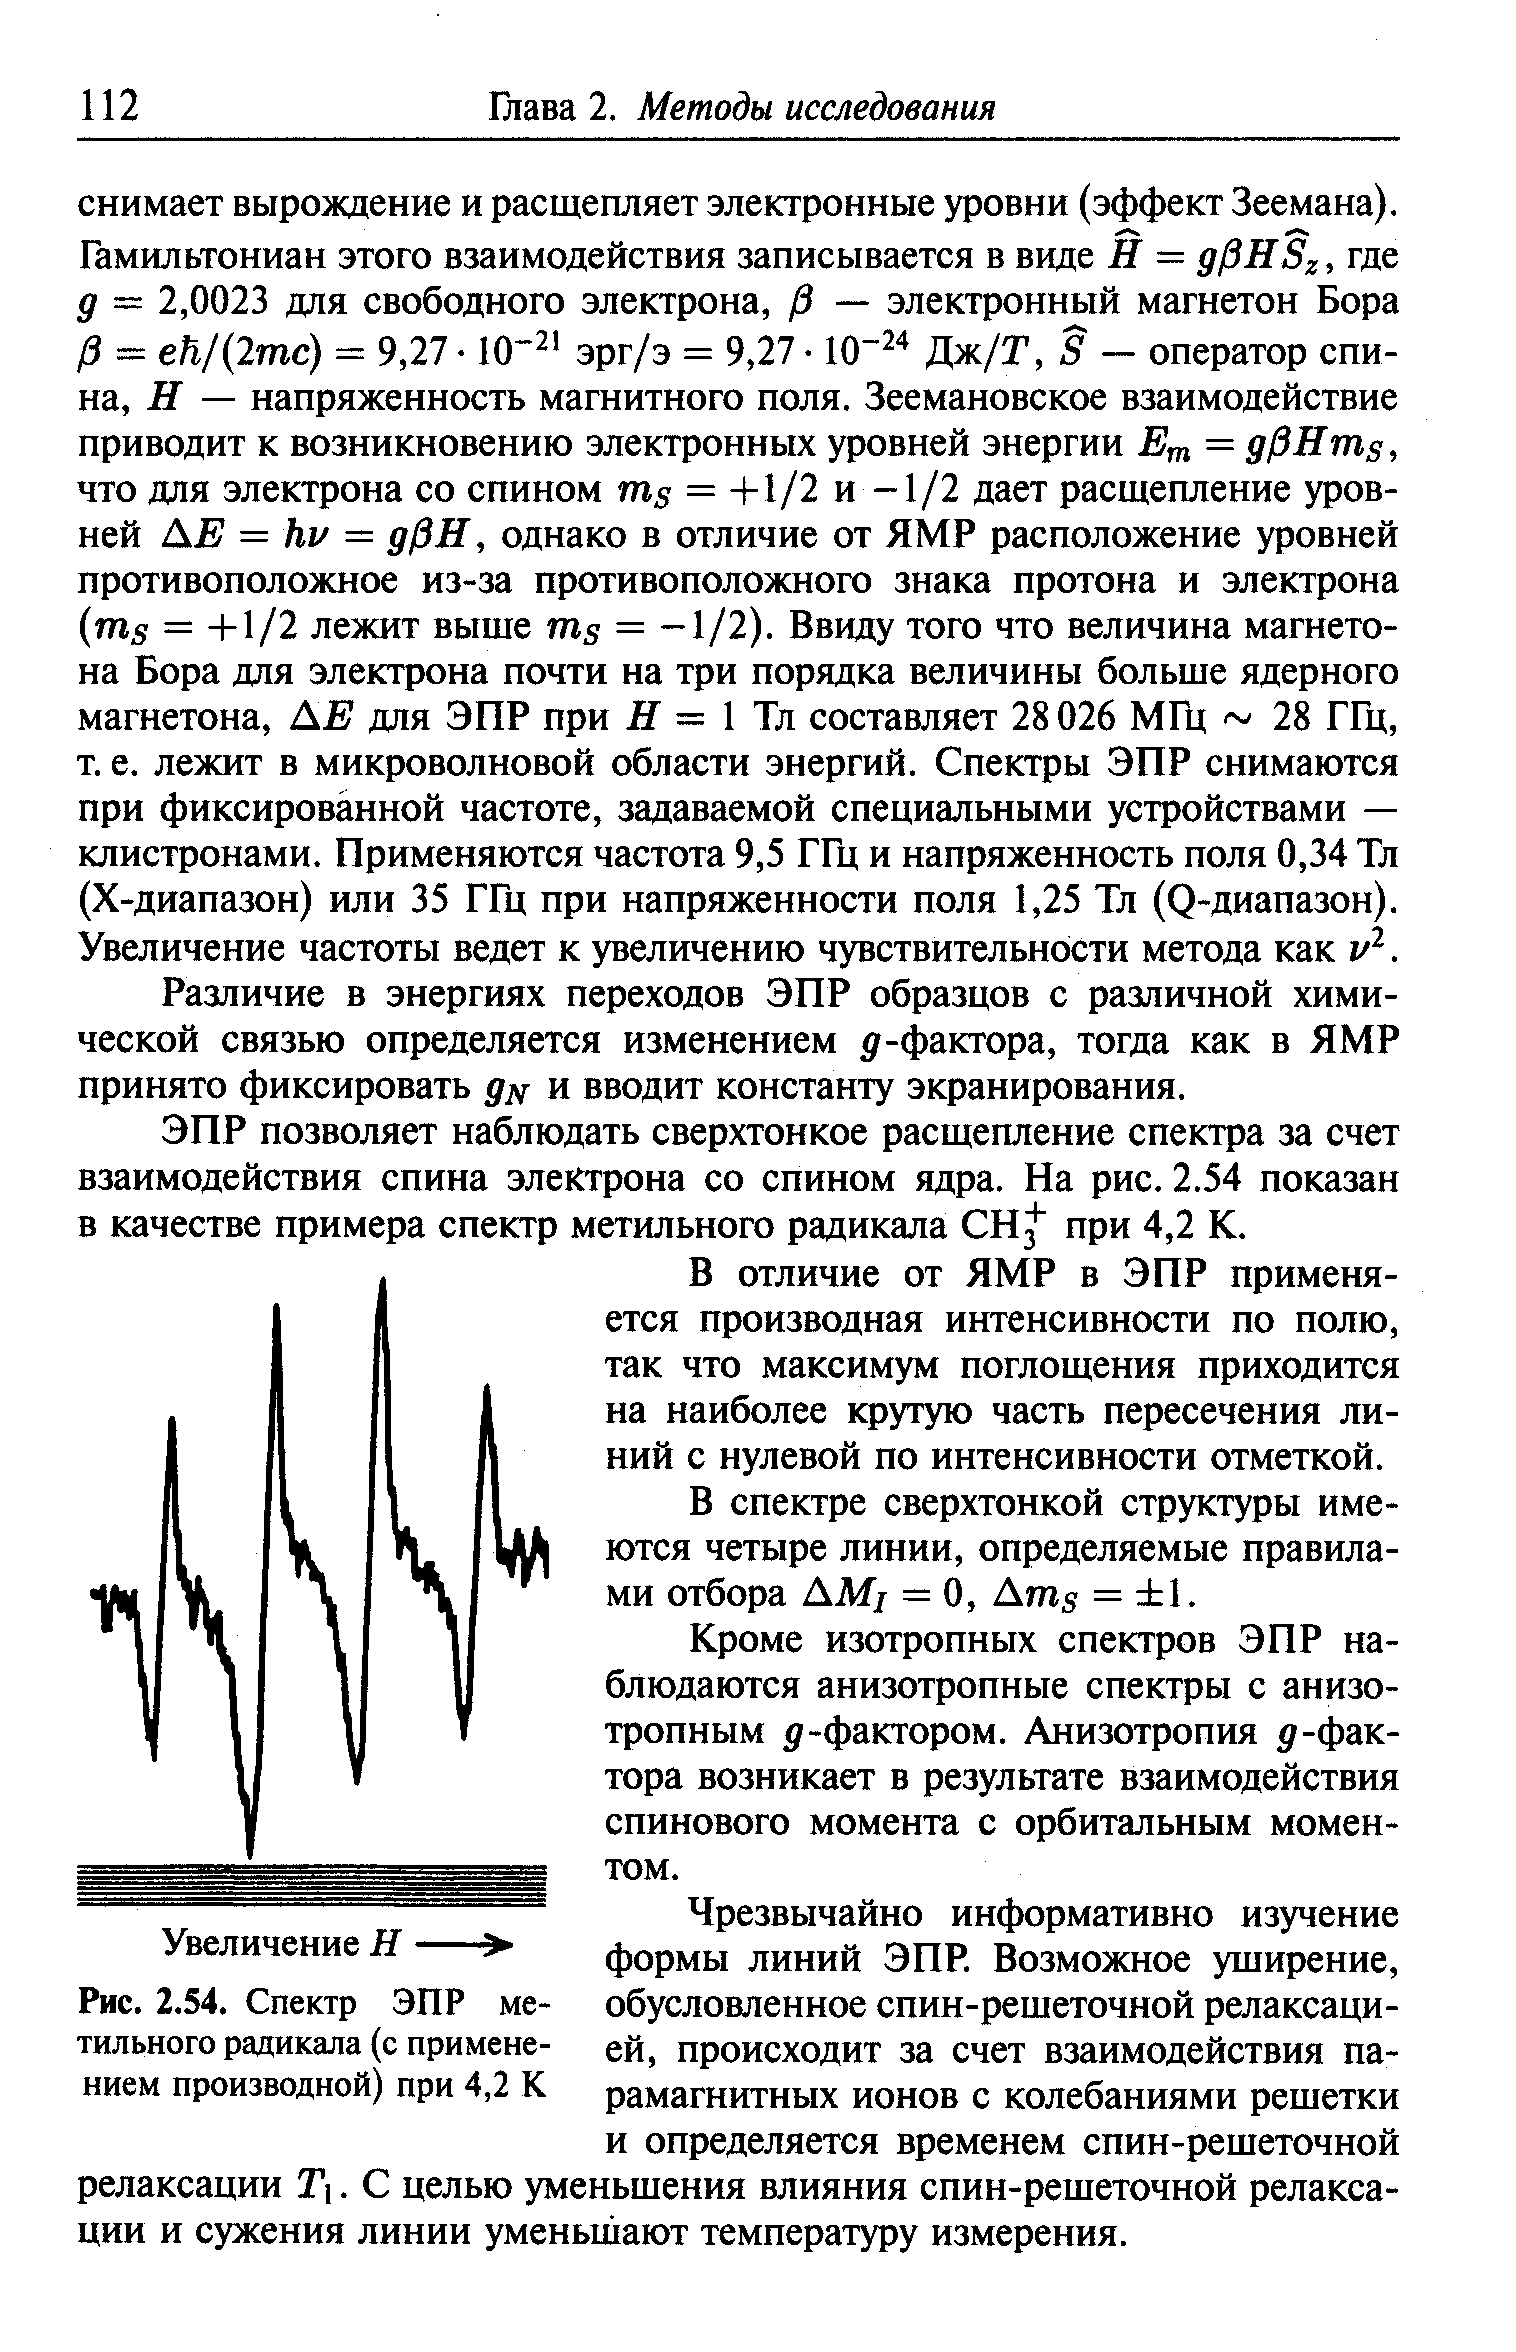 Различие в энергиях переходов ЭПР образцов с различной химической связью определяется изменением -фактора, тогда как в ЯМР принято фиксировать д и вводит константу экранирования.